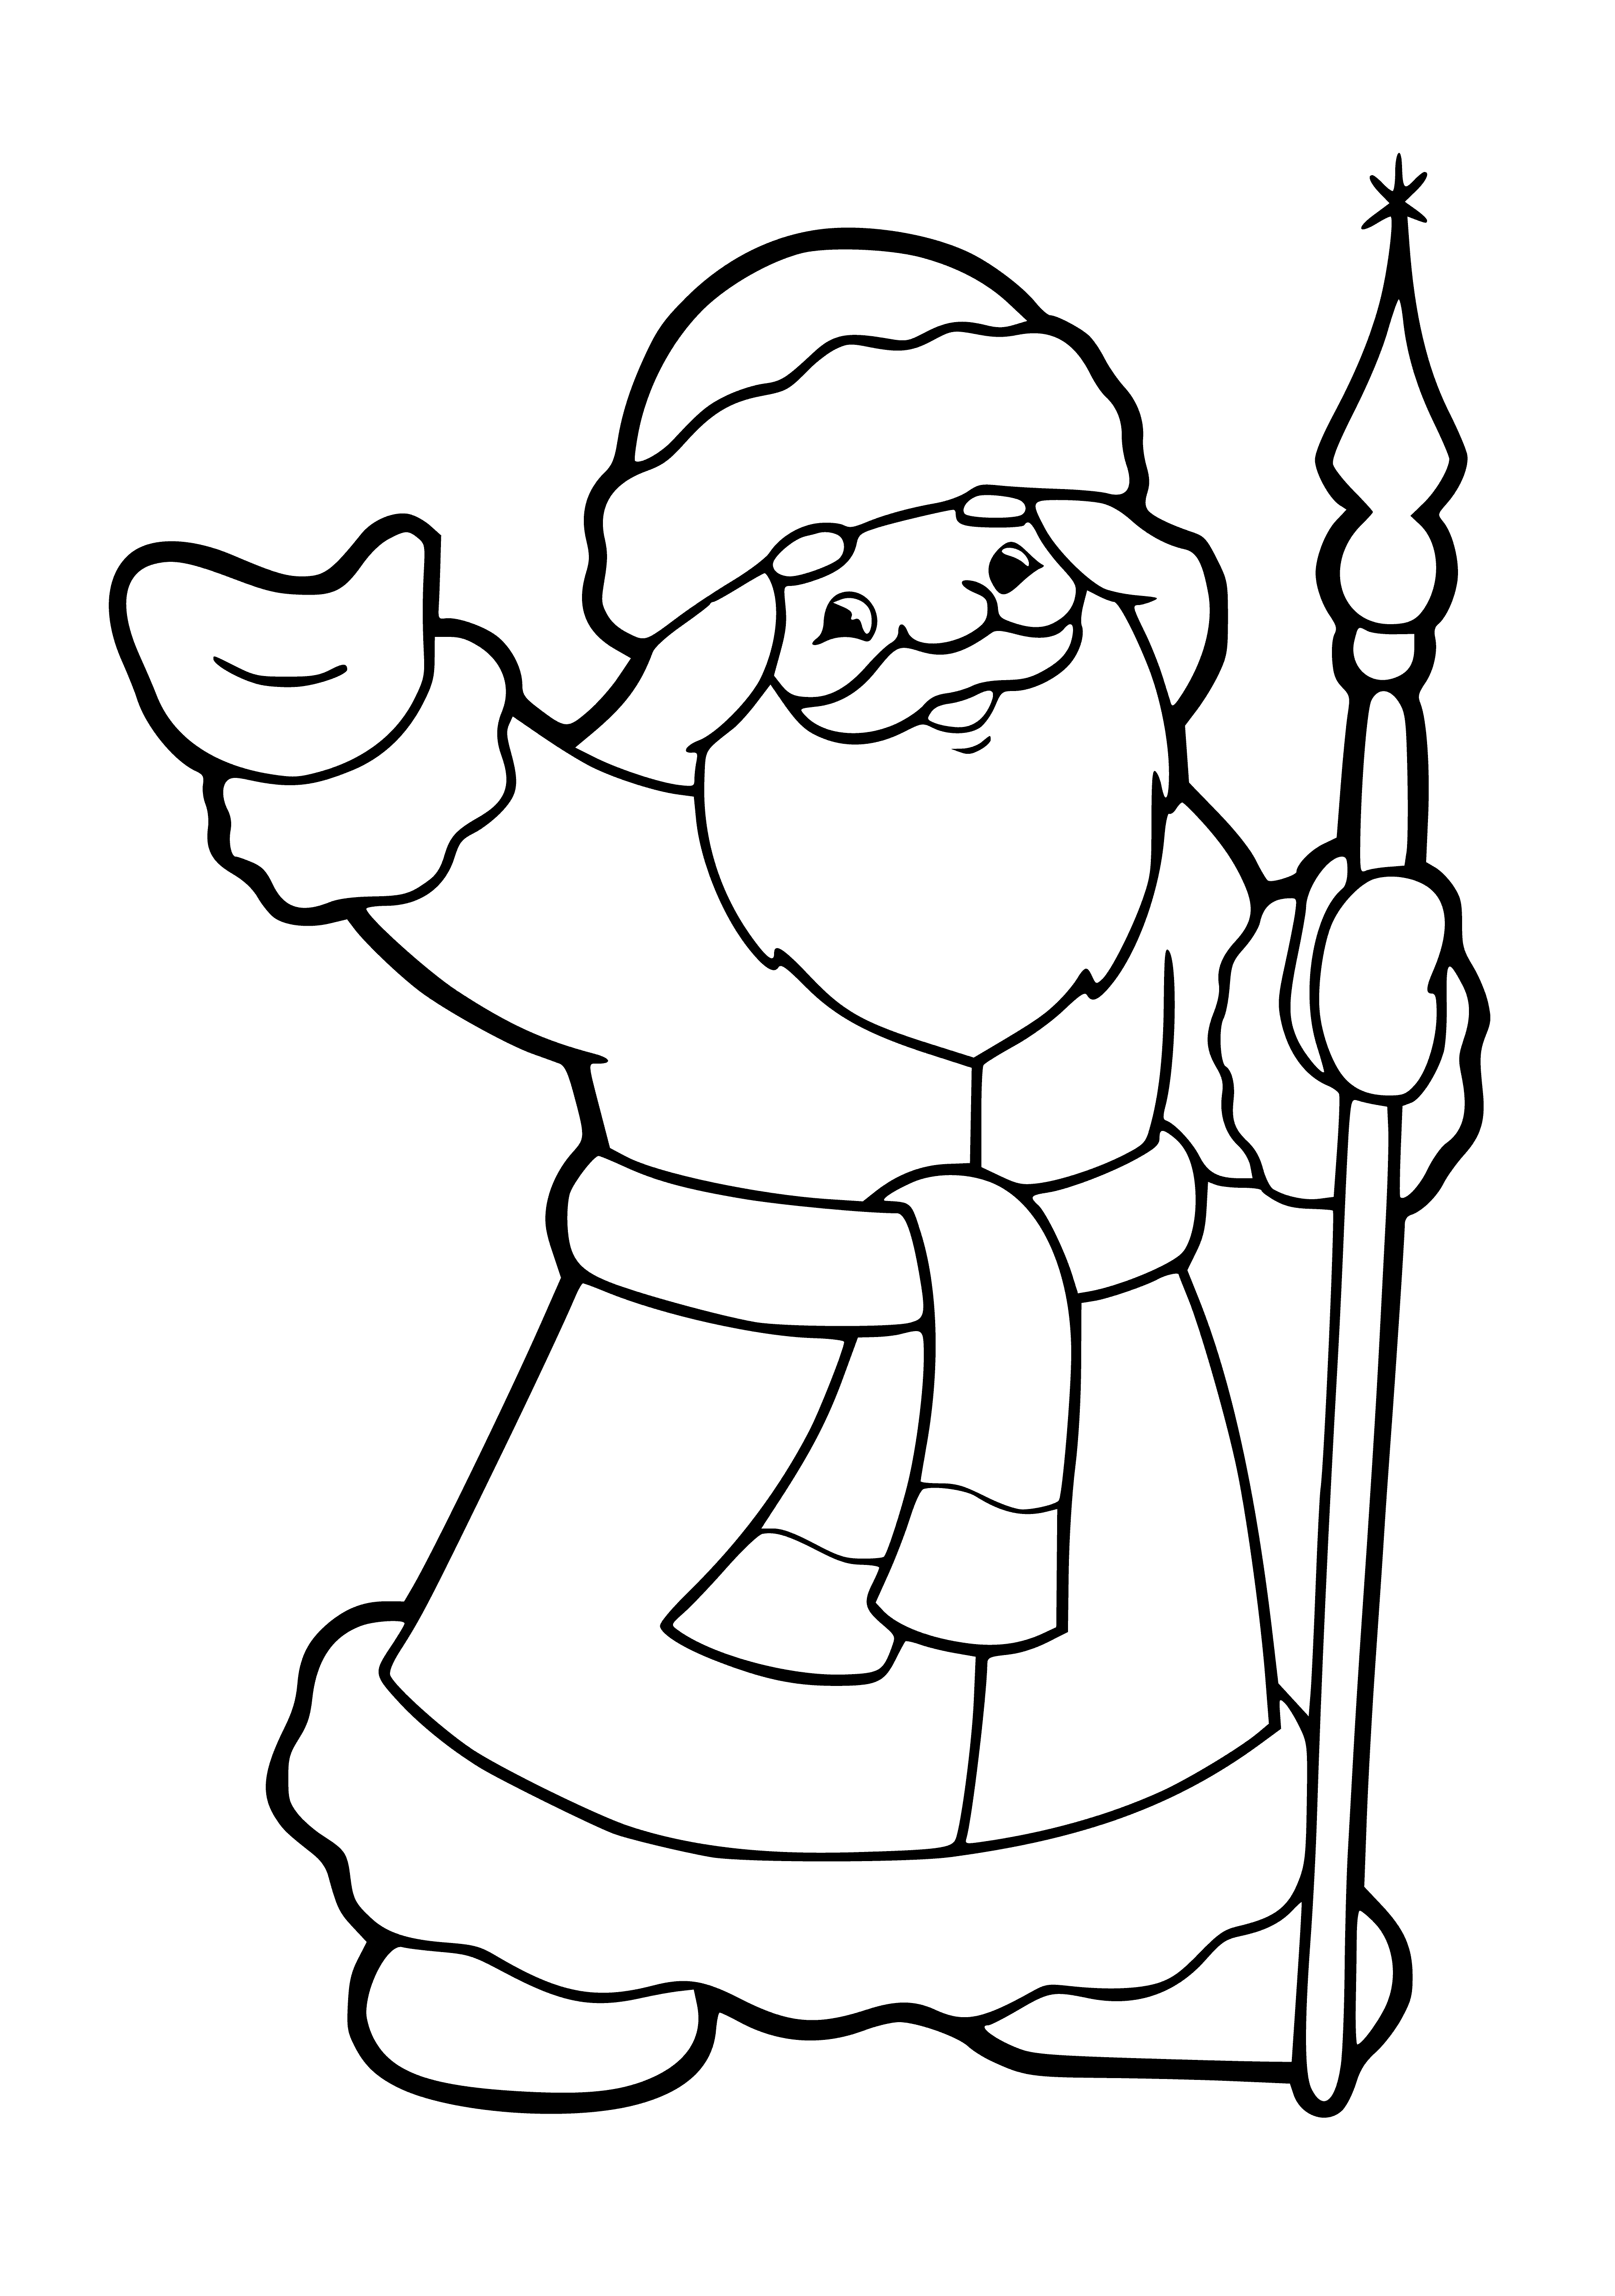 Święty Mikołaj z laską kolorowanka